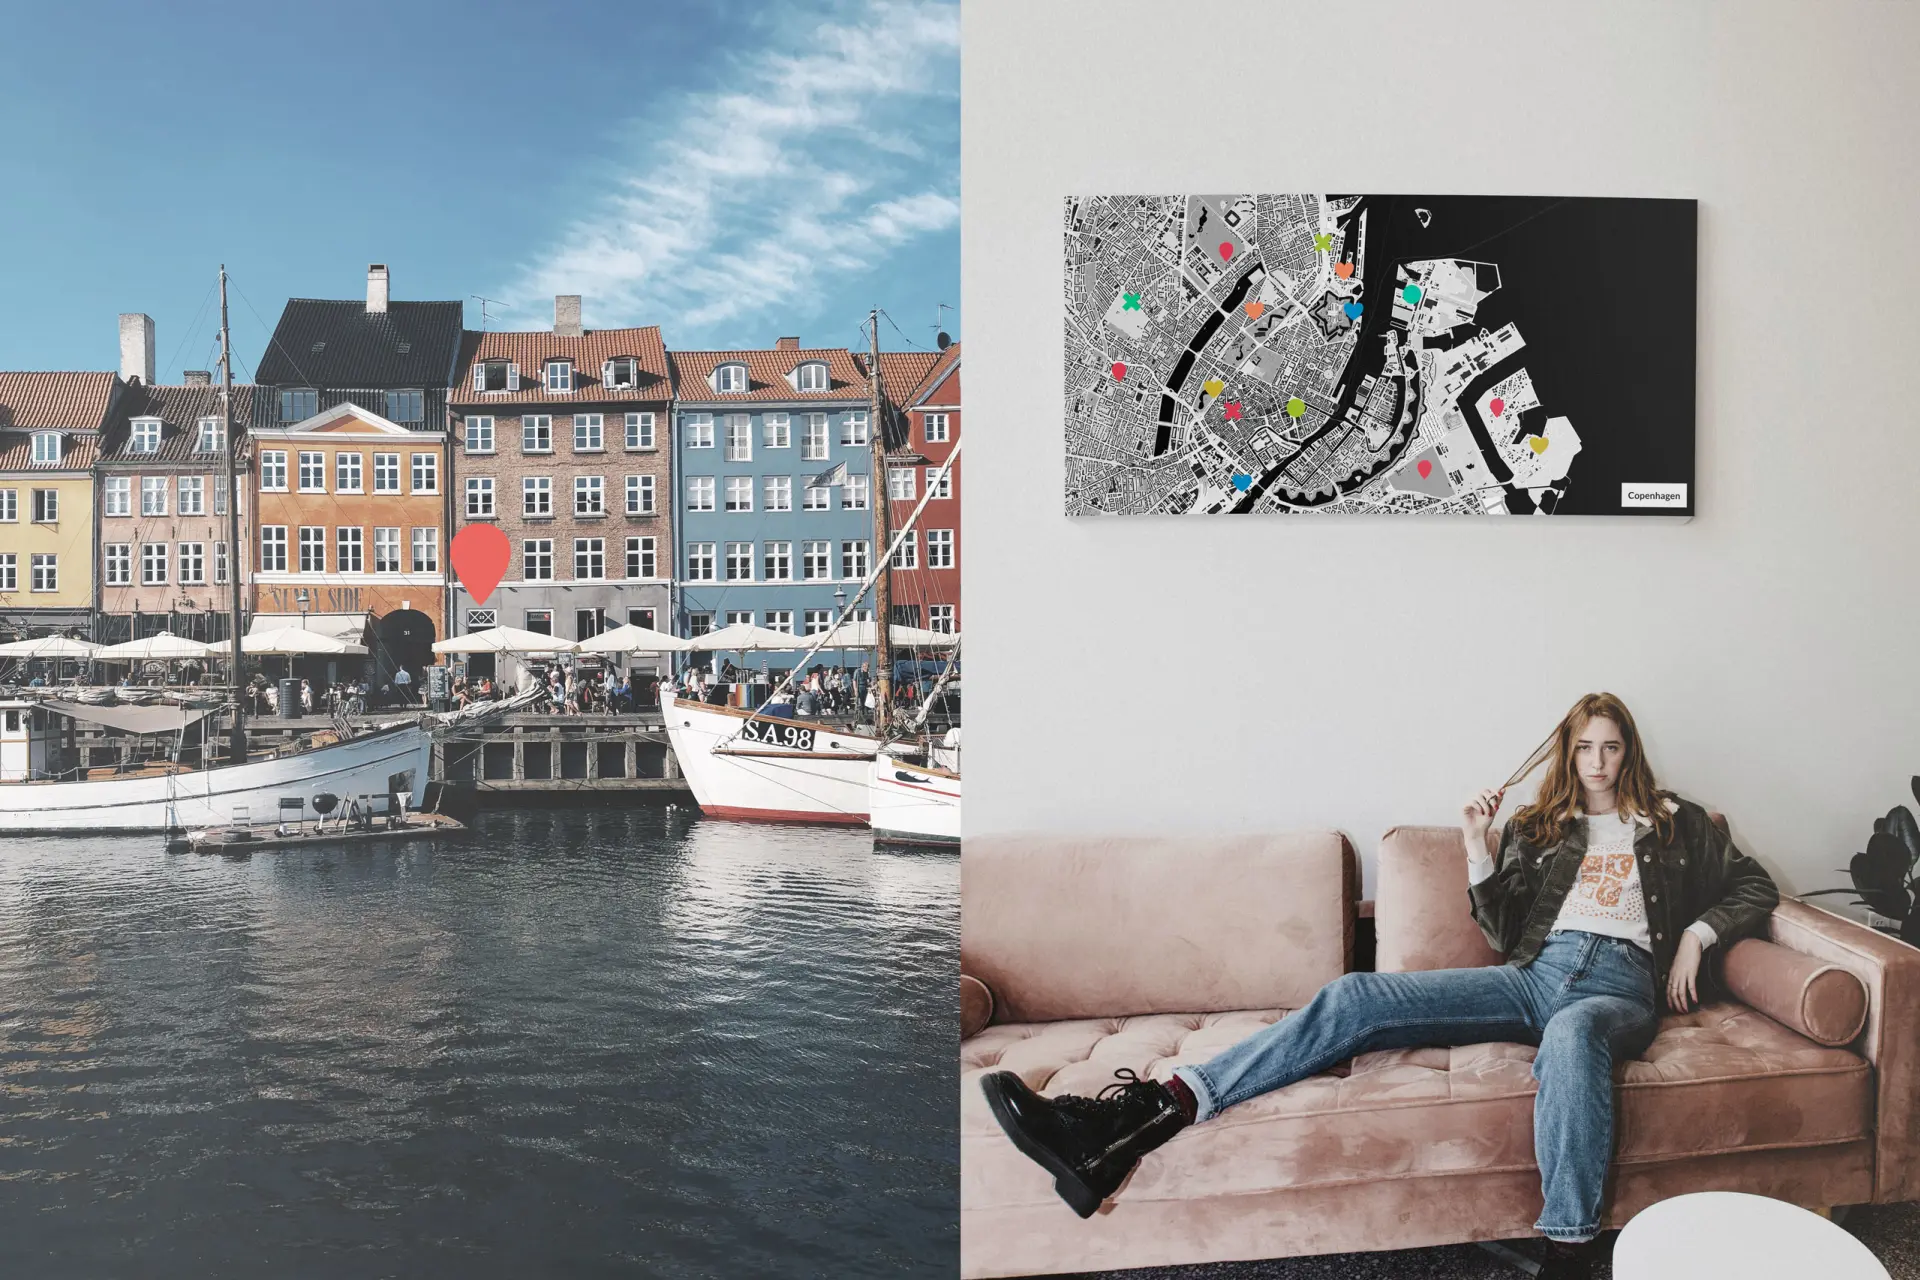 Kopenhagen-Stadtkarte als Poster gestalten